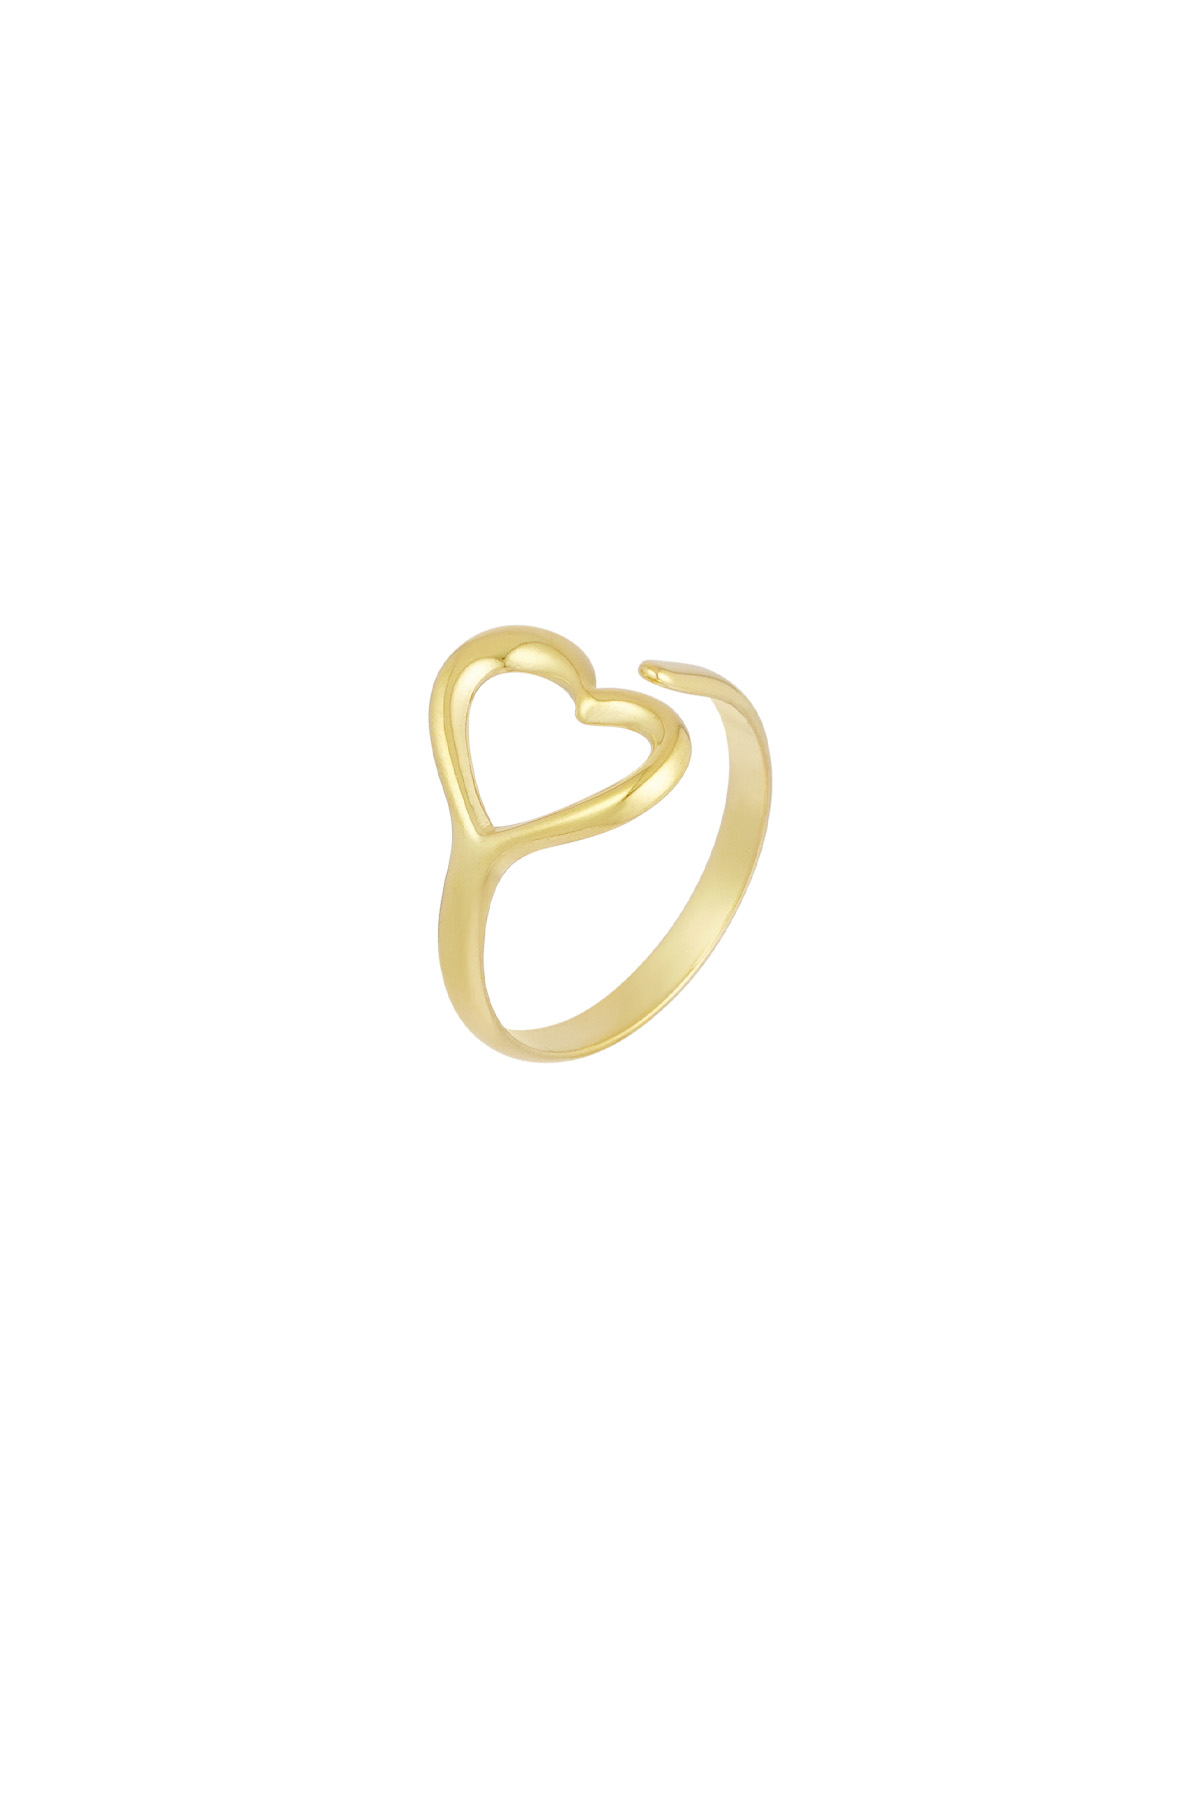 Anello dell'amore sottosopra - oro h5 Immagine3